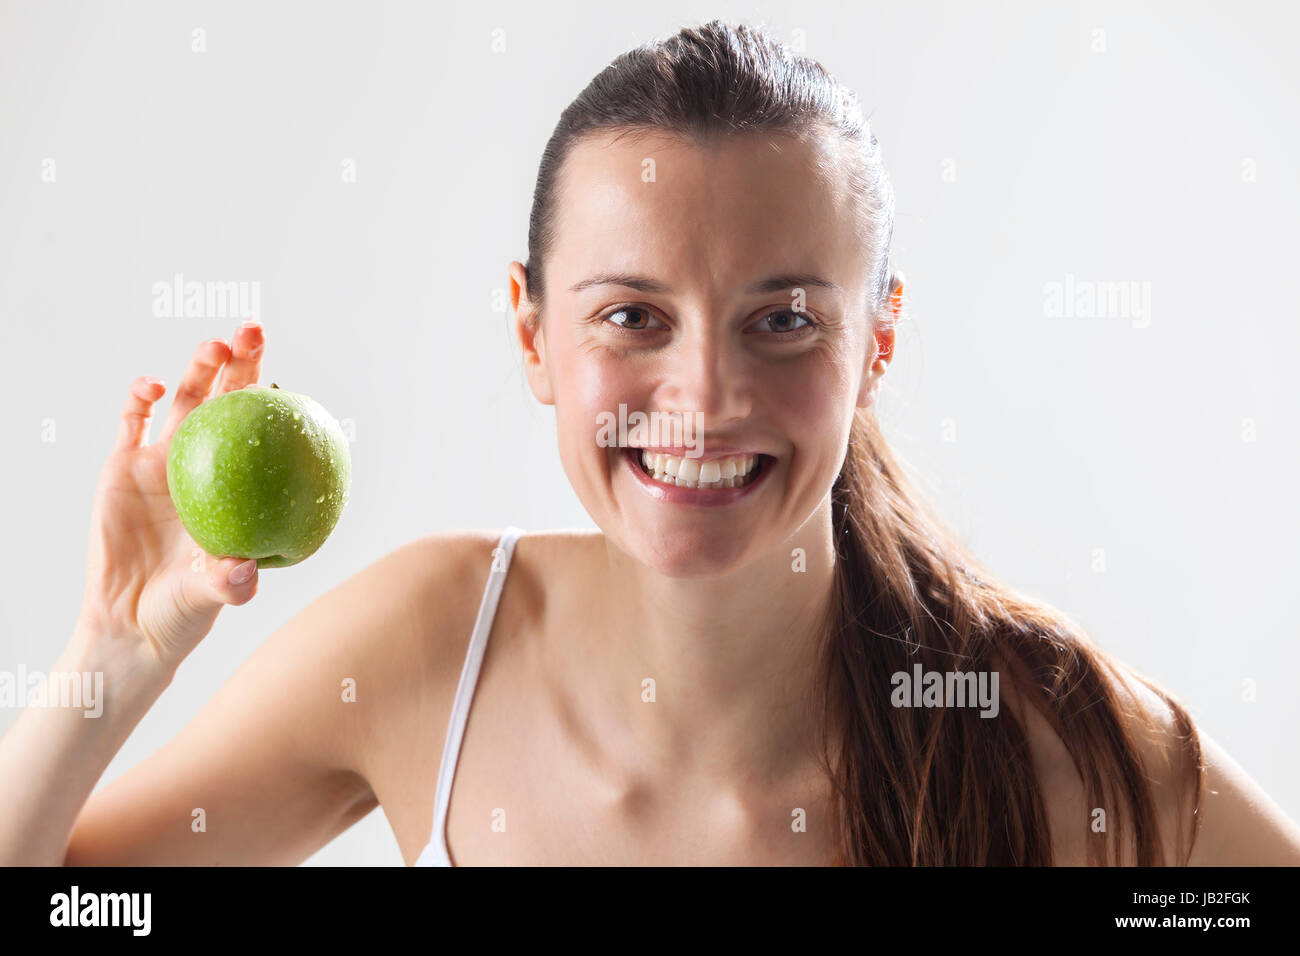 Junge Frau Mit einem Apfel Foto Stock